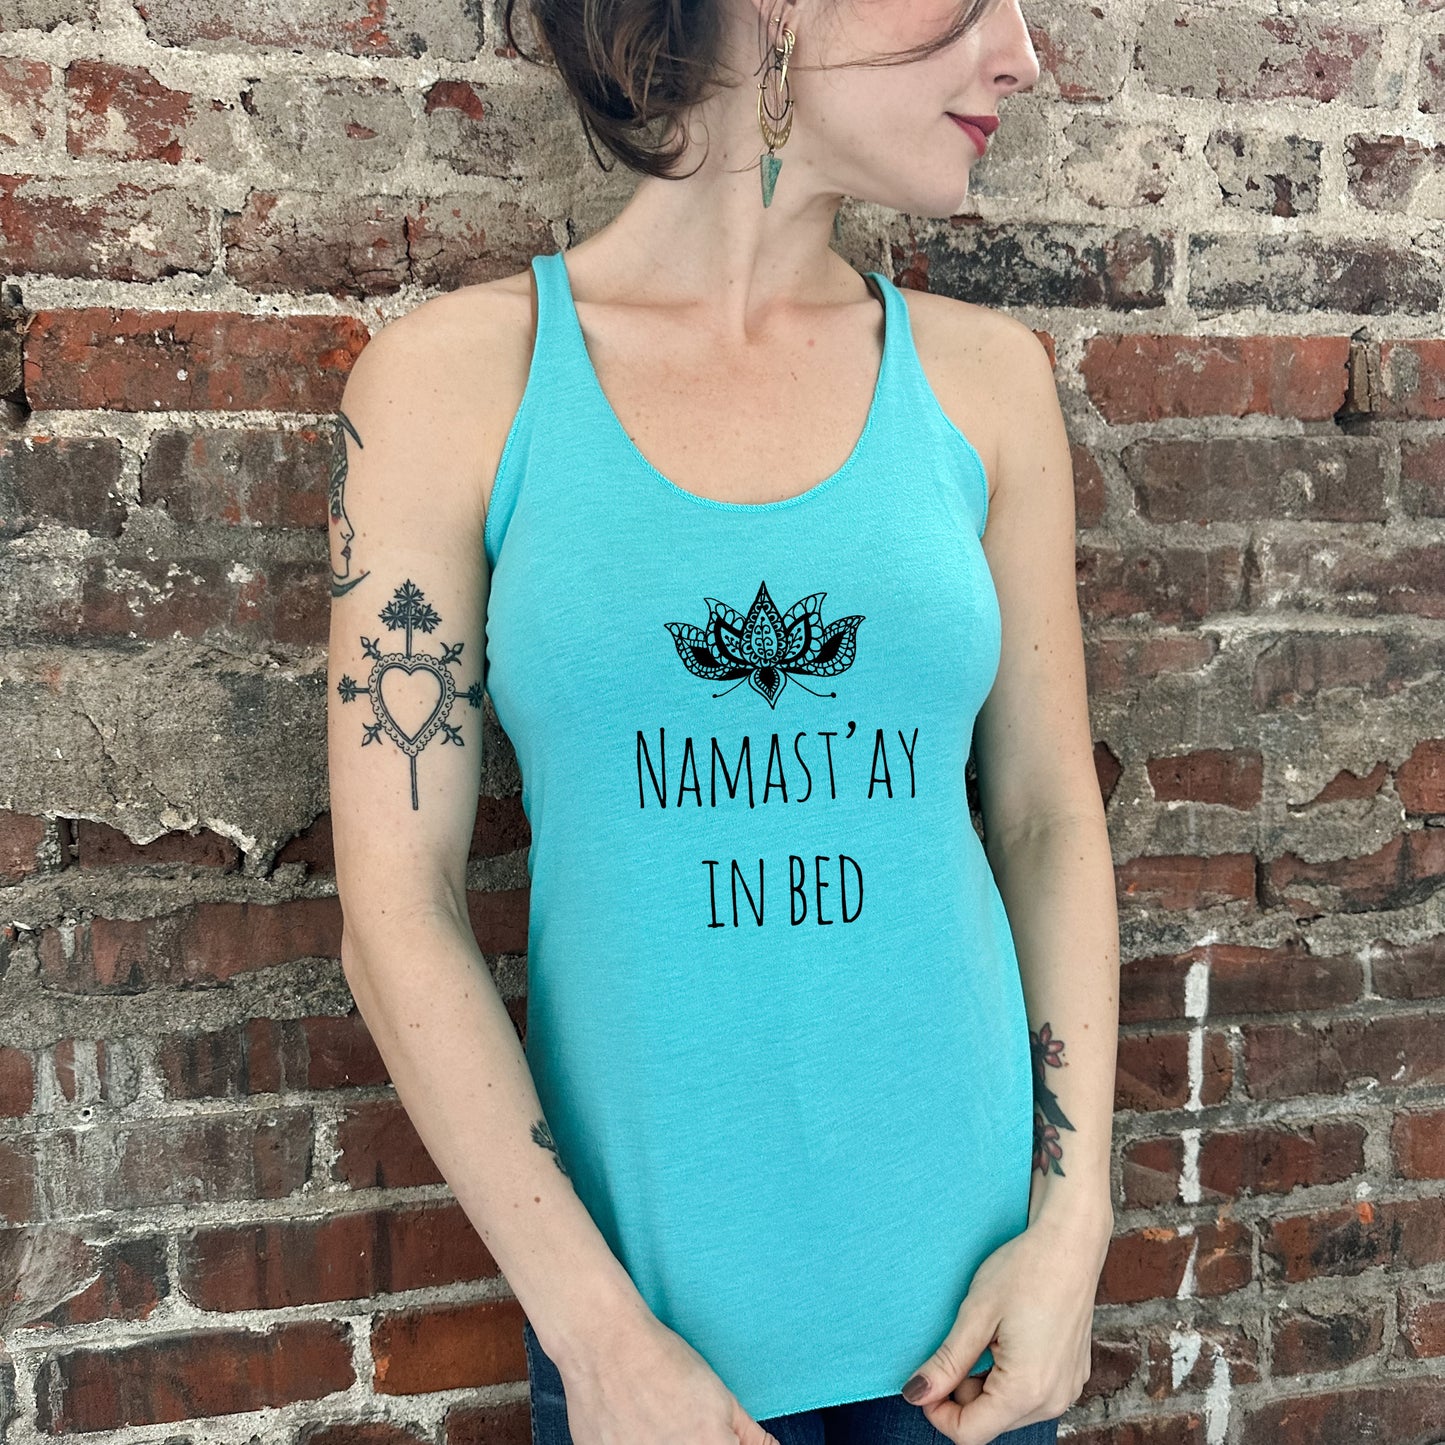 Namast'ay In Bed - Women's Tank - Heather Gray, Tahiti, or Envy